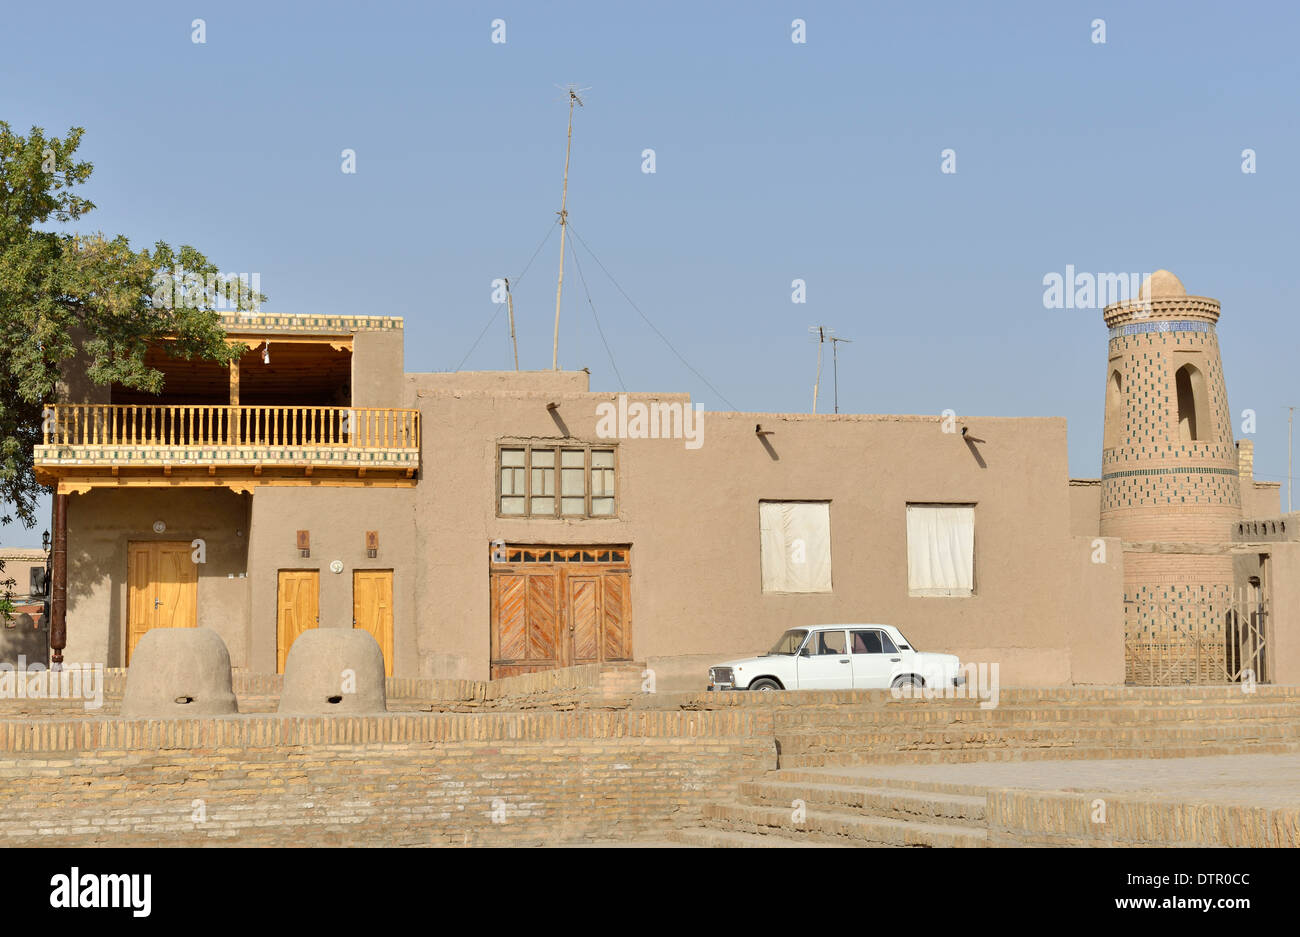 Maison de terre, Ichon-Qala (vieille ville), Khiva, Ouzbékistan Banque D'Images